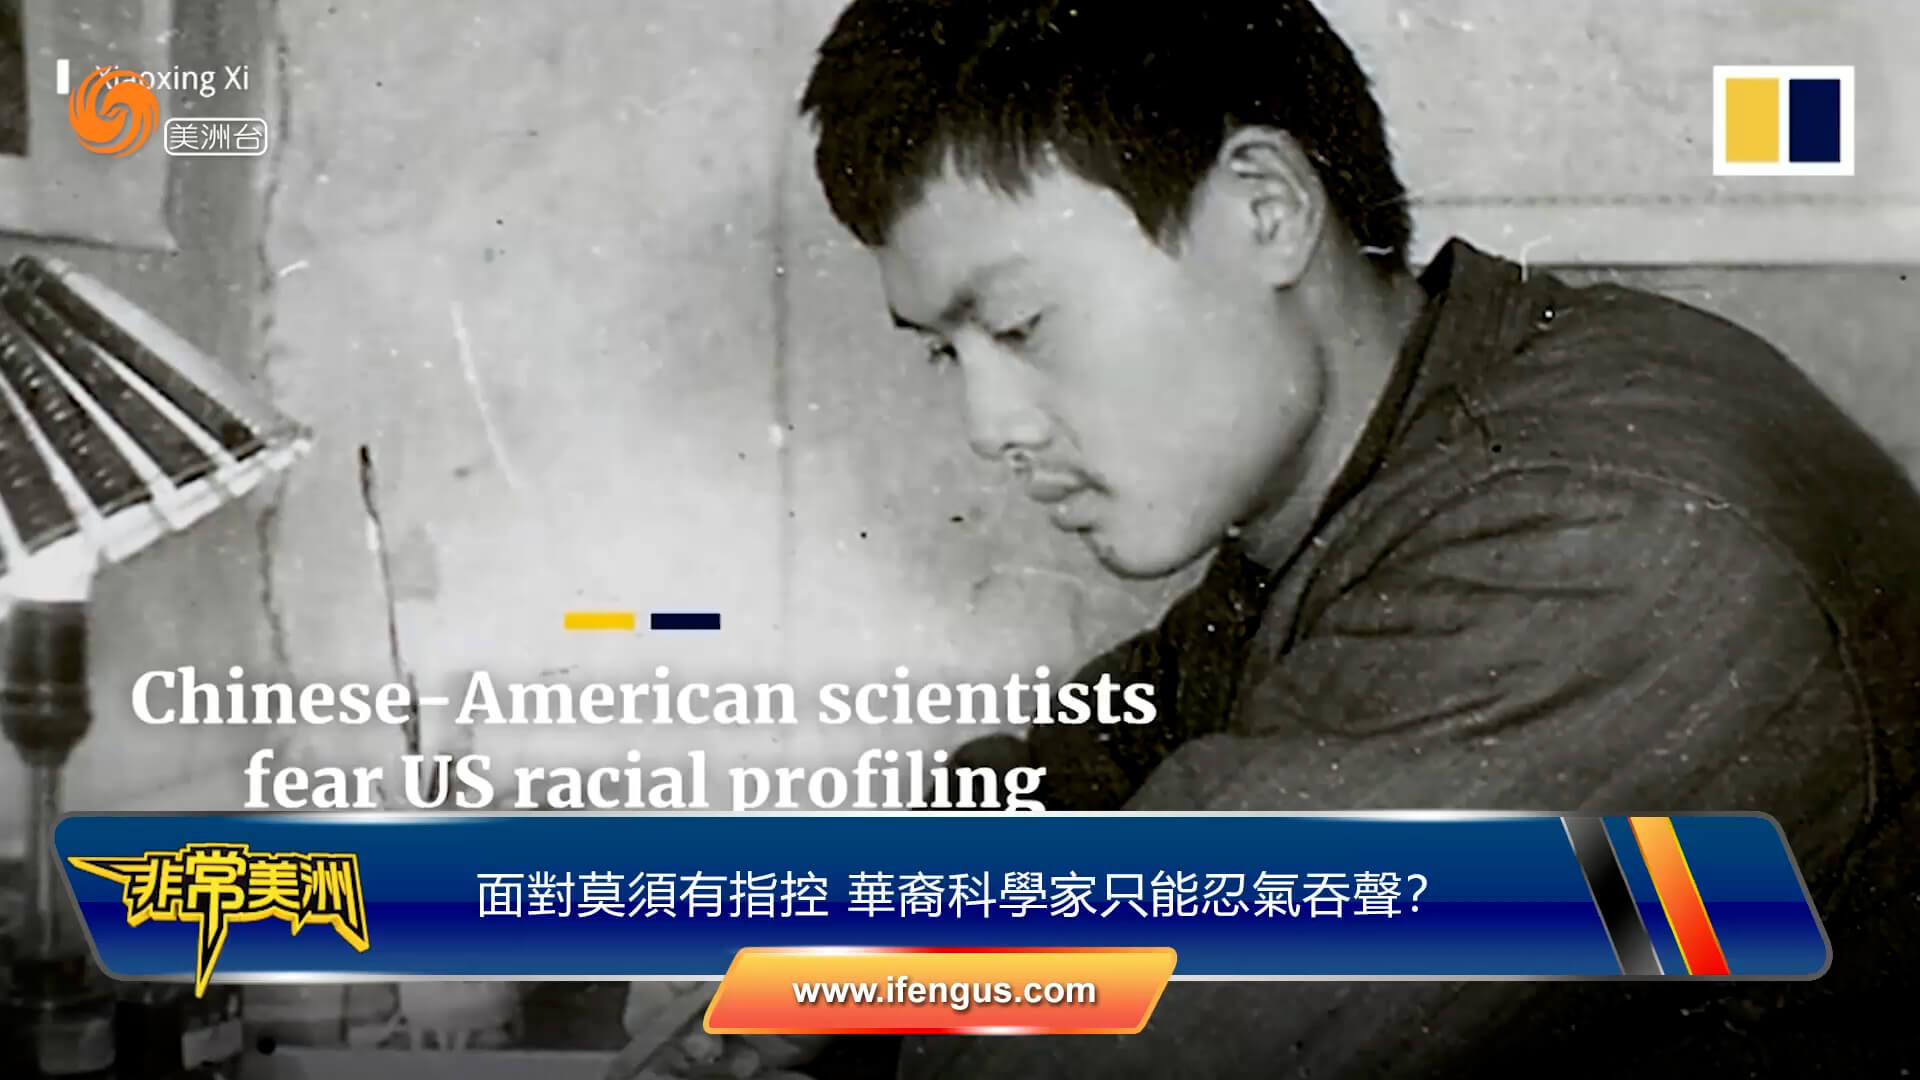 面对莫须有指控 华裔科学家只能忍气吞声？